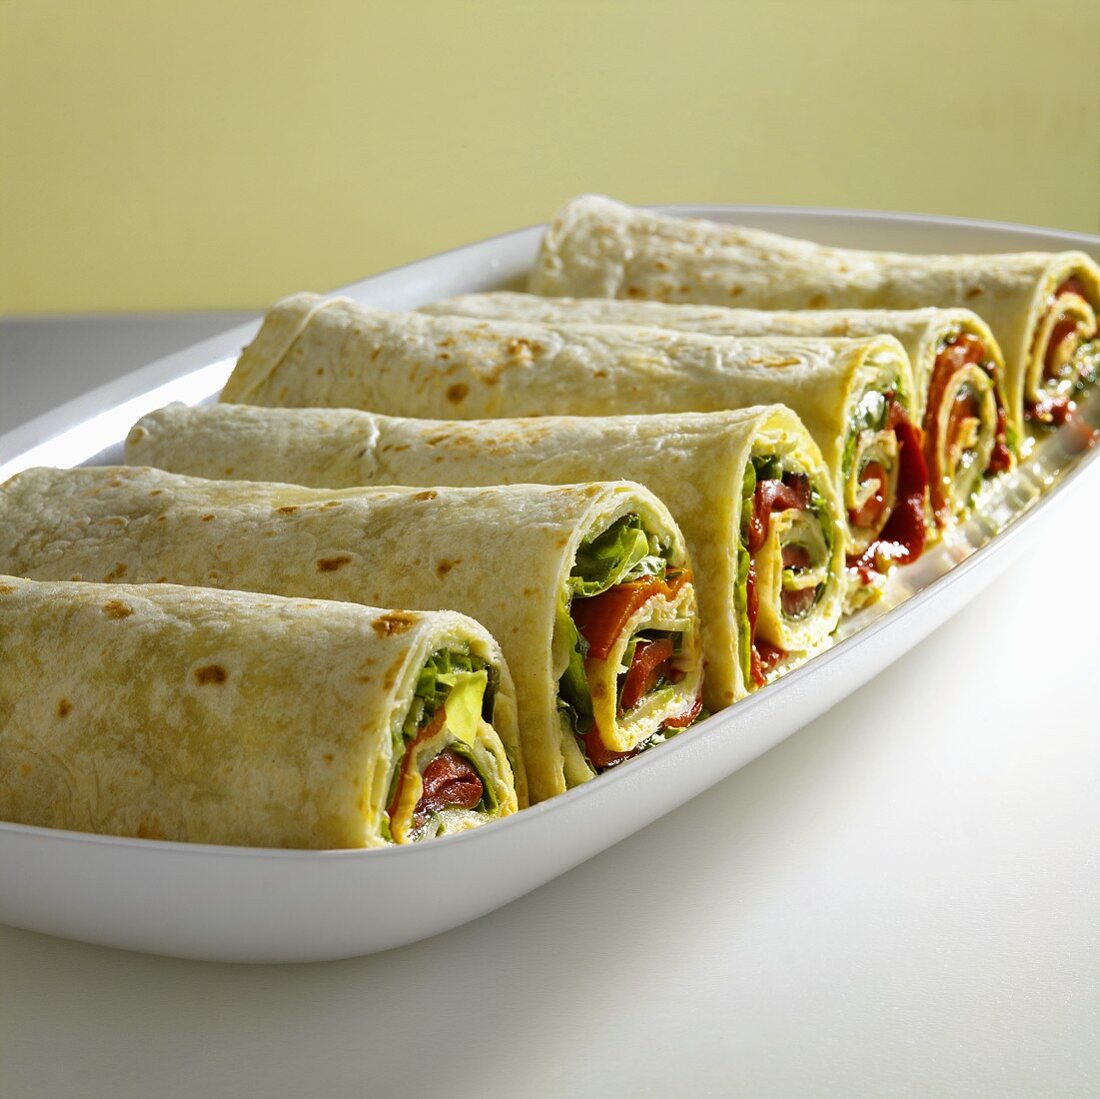 Sechs Wraps, gefüllt mit Hummus und Gemüse